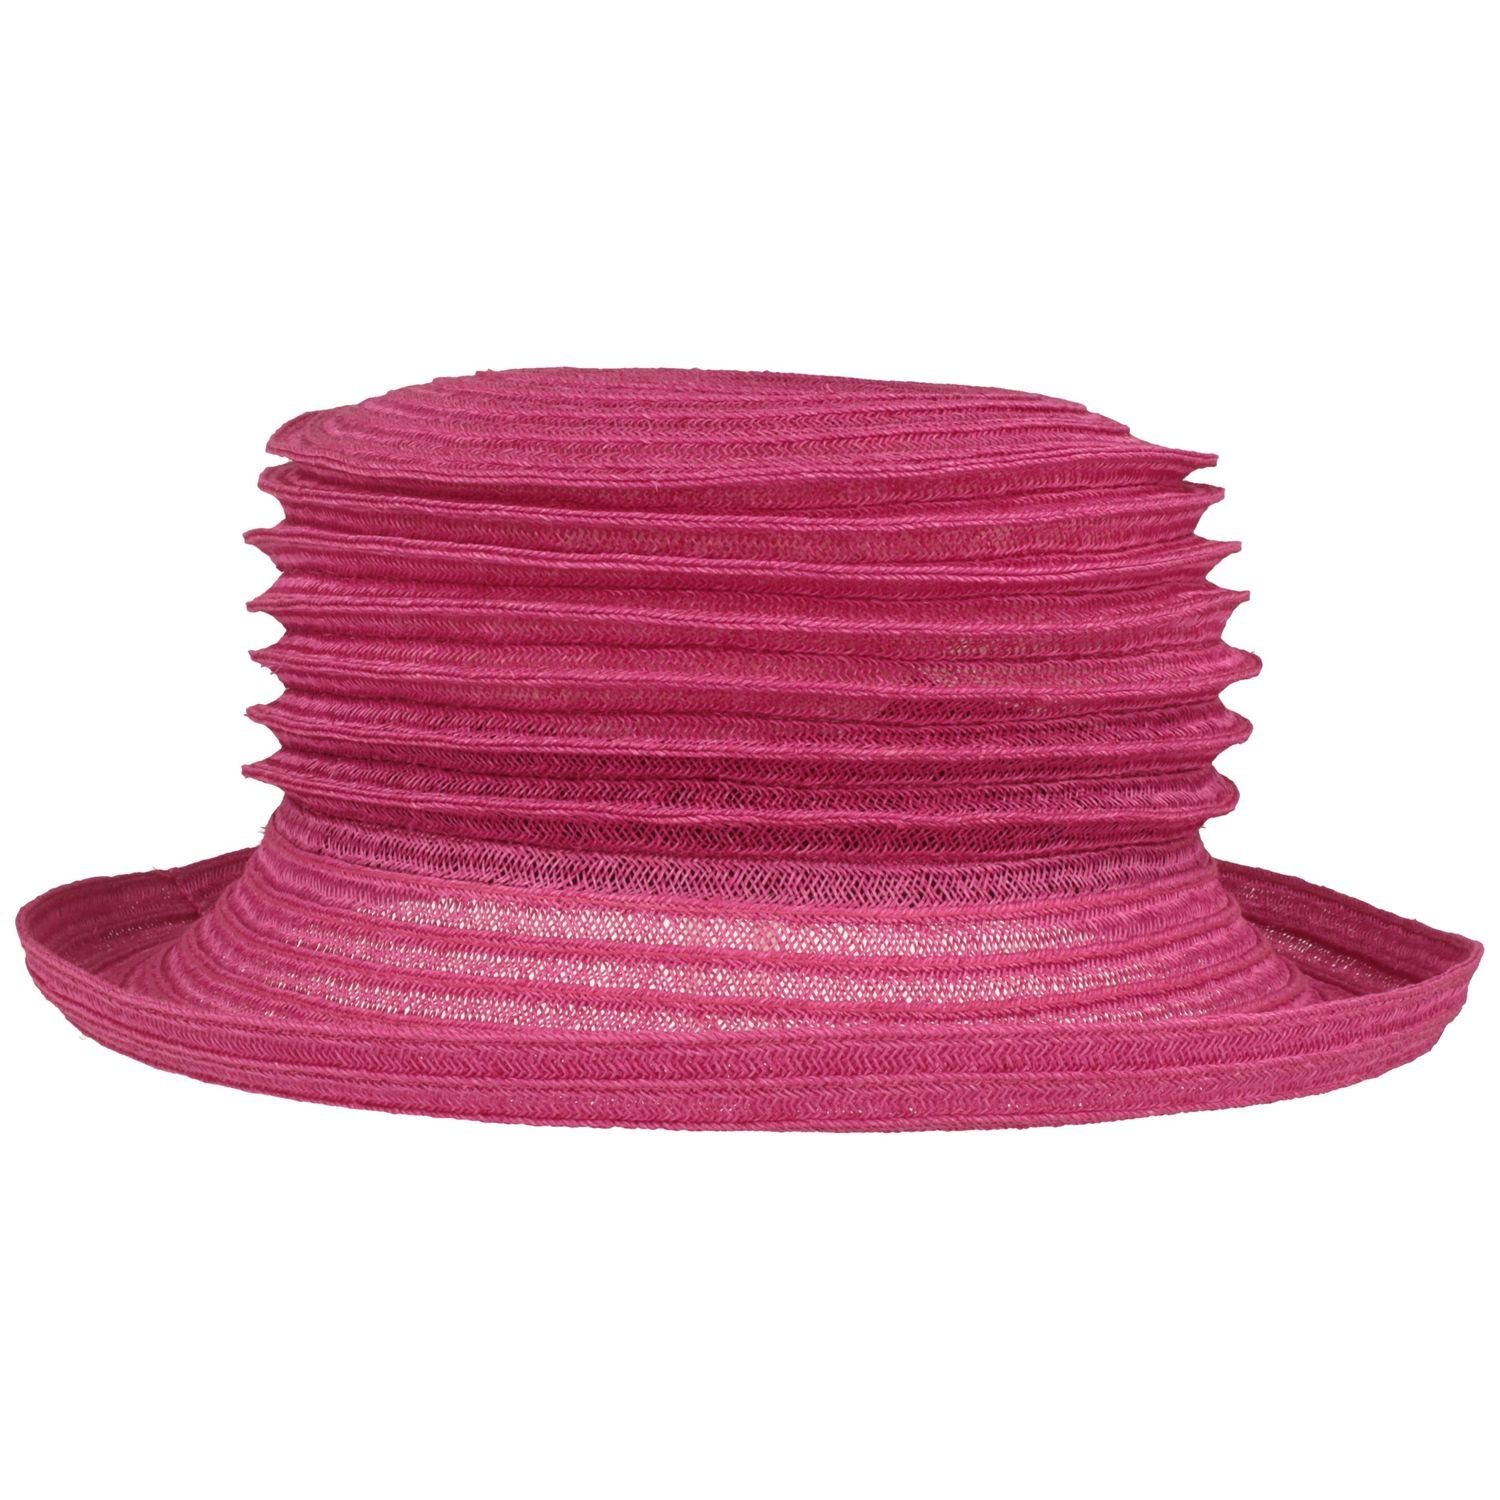 aus Mayser Bortenhut 9010 Hanf faltbarer pink knautschbarer Strohhut & Bella